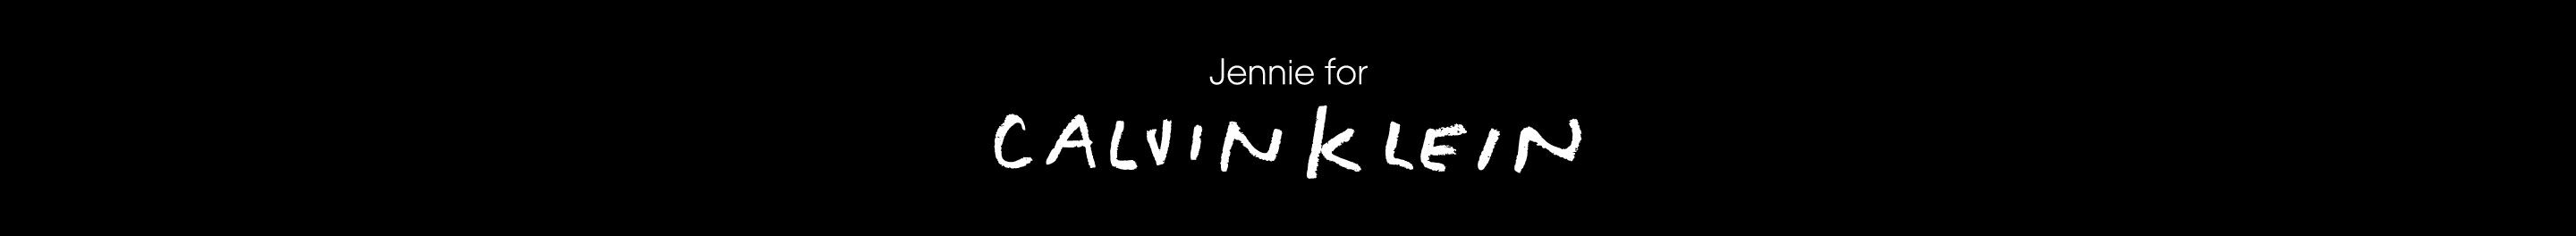 JENNIE For Calvin Klein